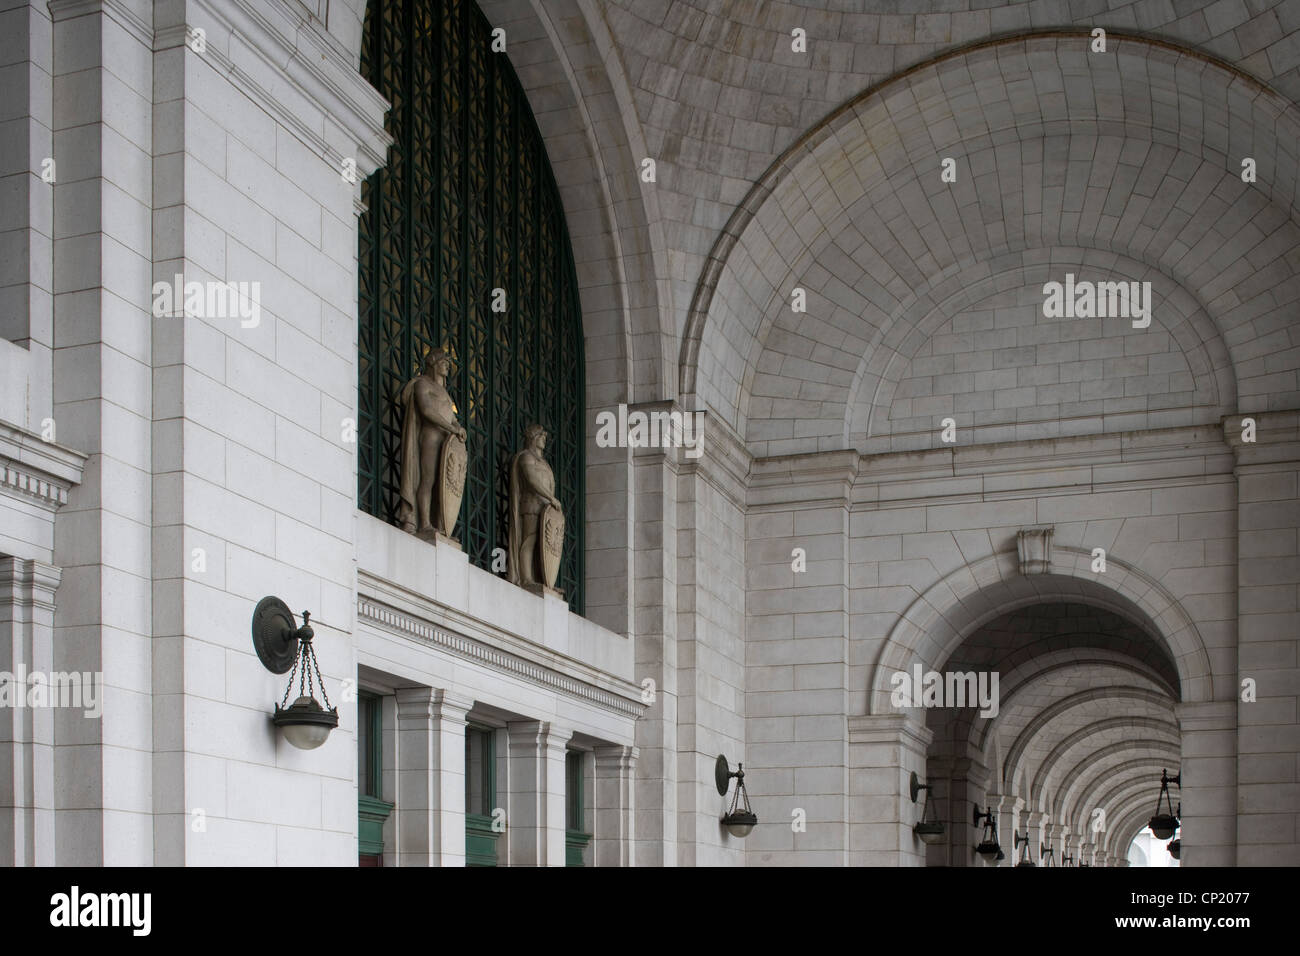 La gare Union, Washington, D.C. Etats-unis, architectes : architectes : Daniel Burnham, assistée par Pierce Anderson Banque D'Images